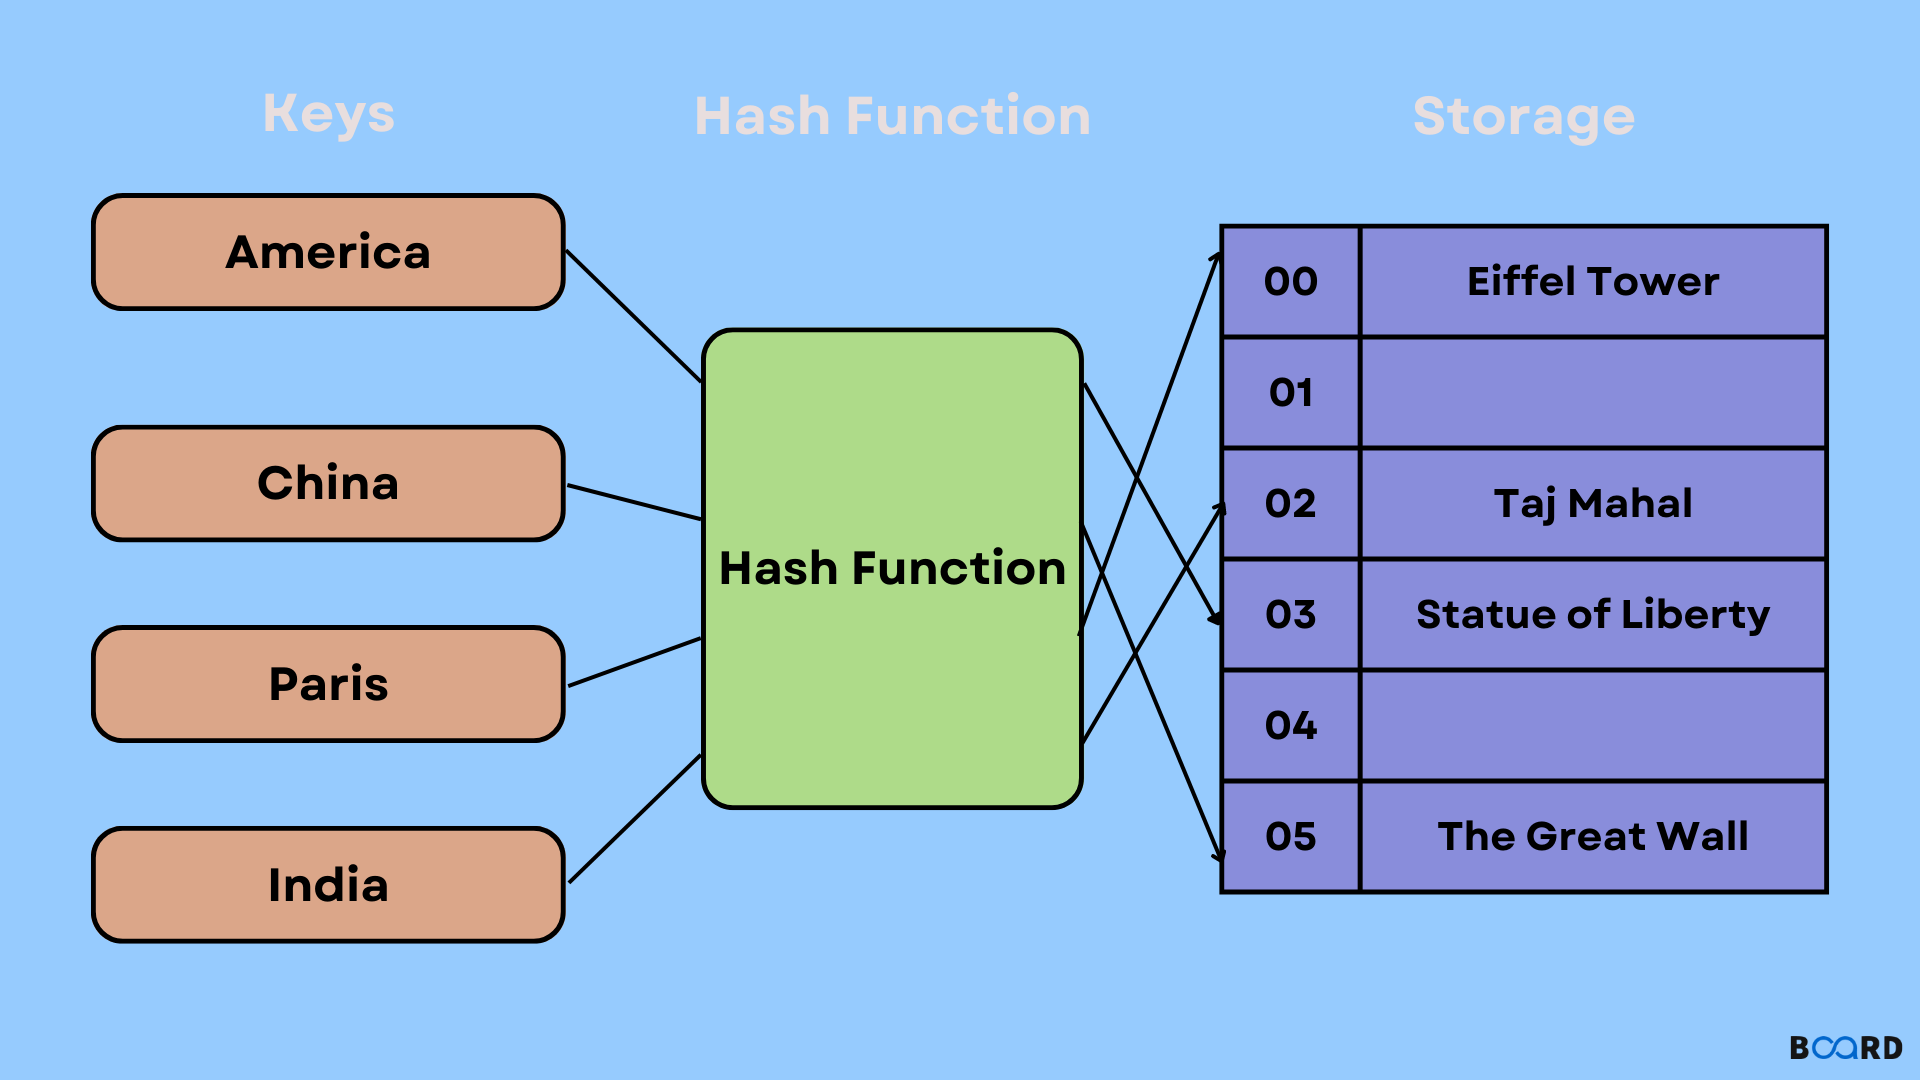 HashMap in Python